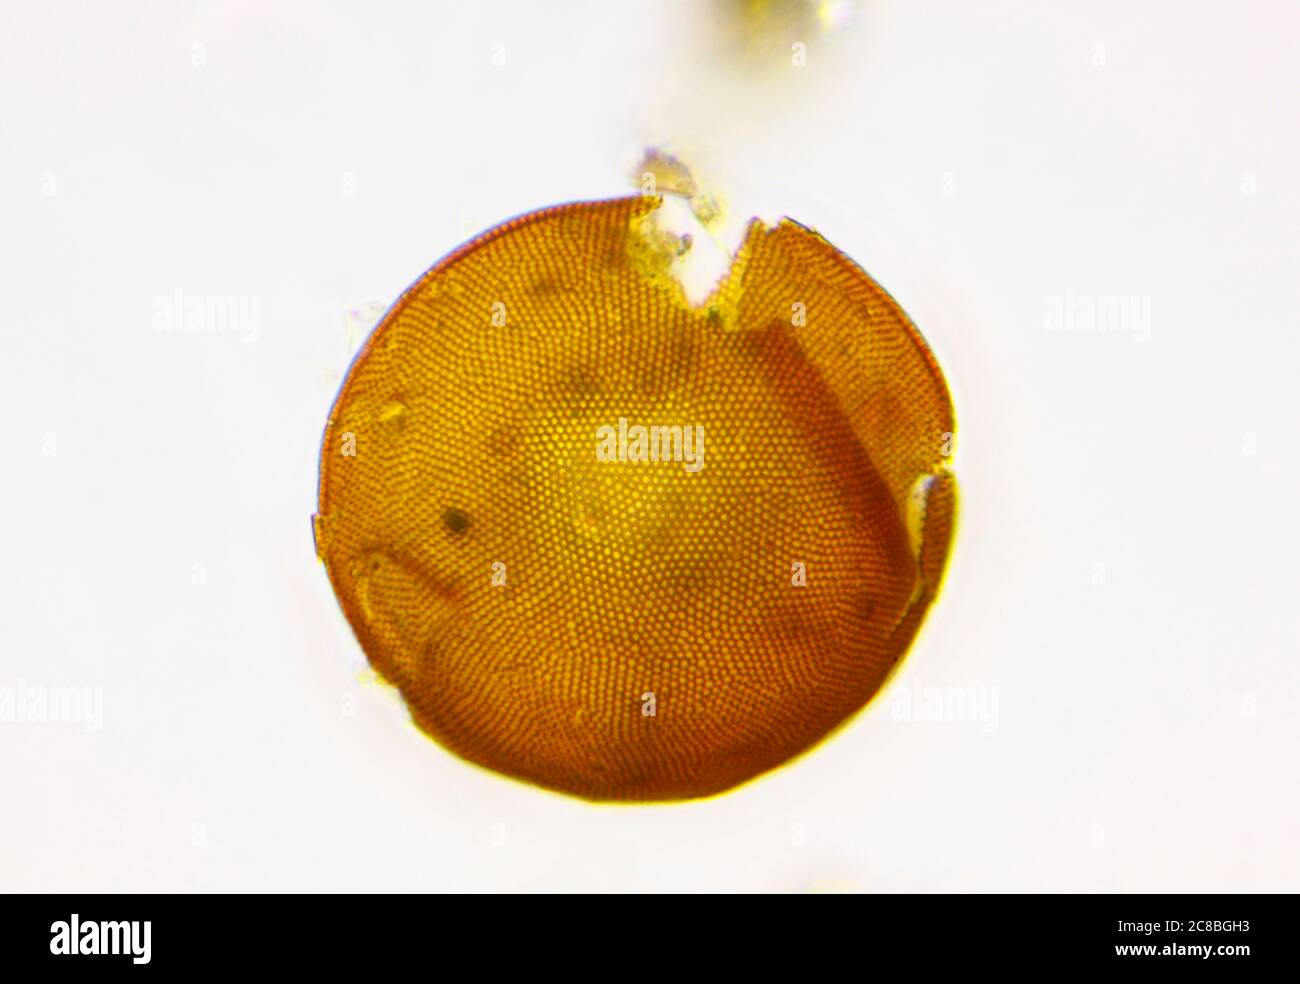 Vista microscopica della conchiglia di ameba (Arcella) con schema di conchiglia chitinosa esterna visibile. Illuminazione a campo chiaro. Foto Stock